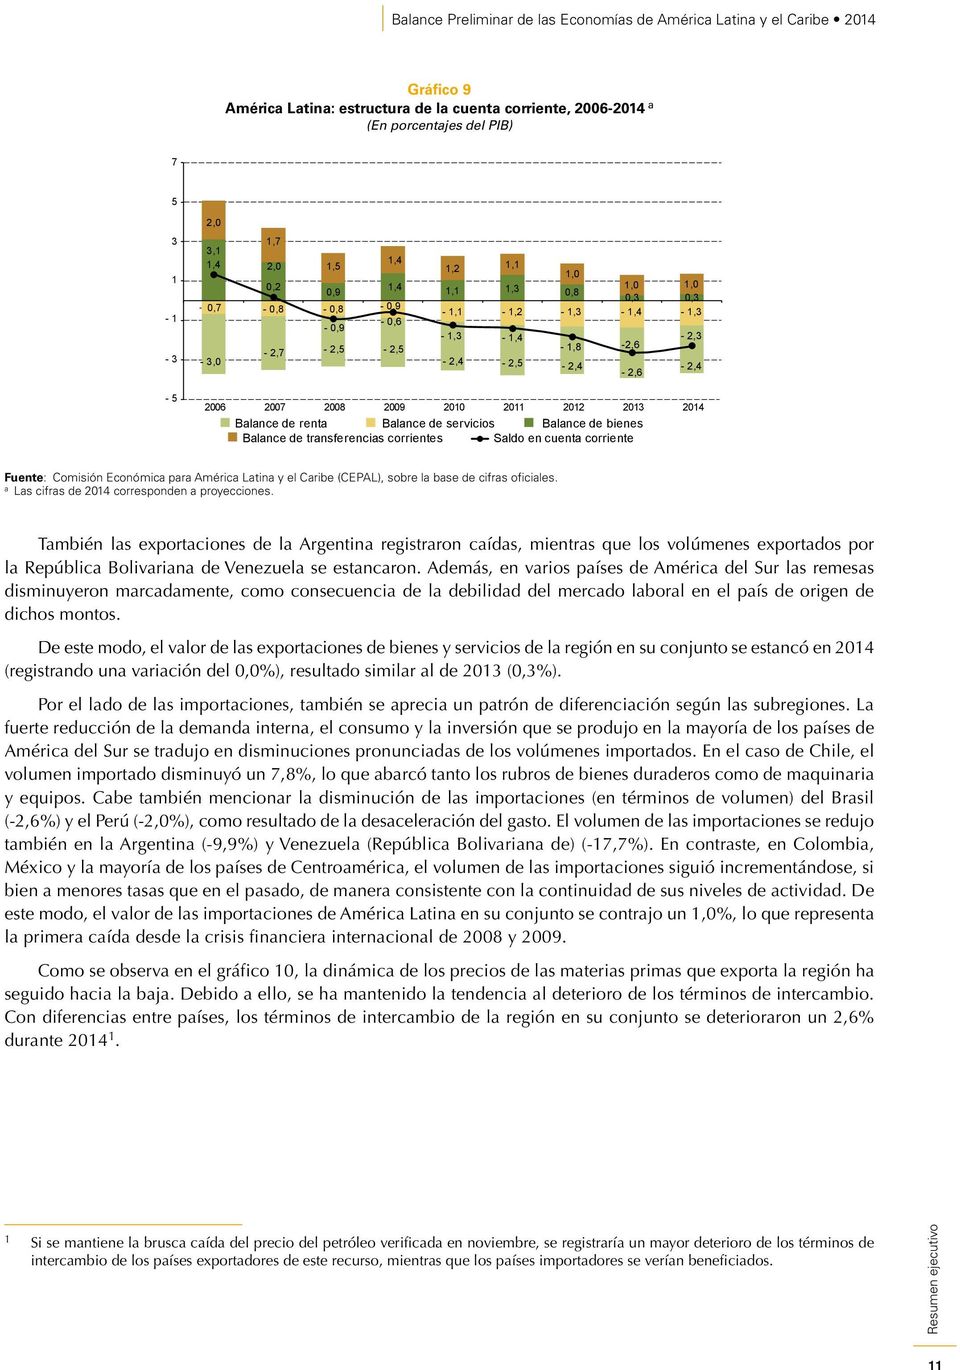 de rent Blnce de servicios Blnce de bienes Blnce de trnsferencis corrientes Sldo en cuent corriente Ls cifrs de 2014 corresponden proyecciones.